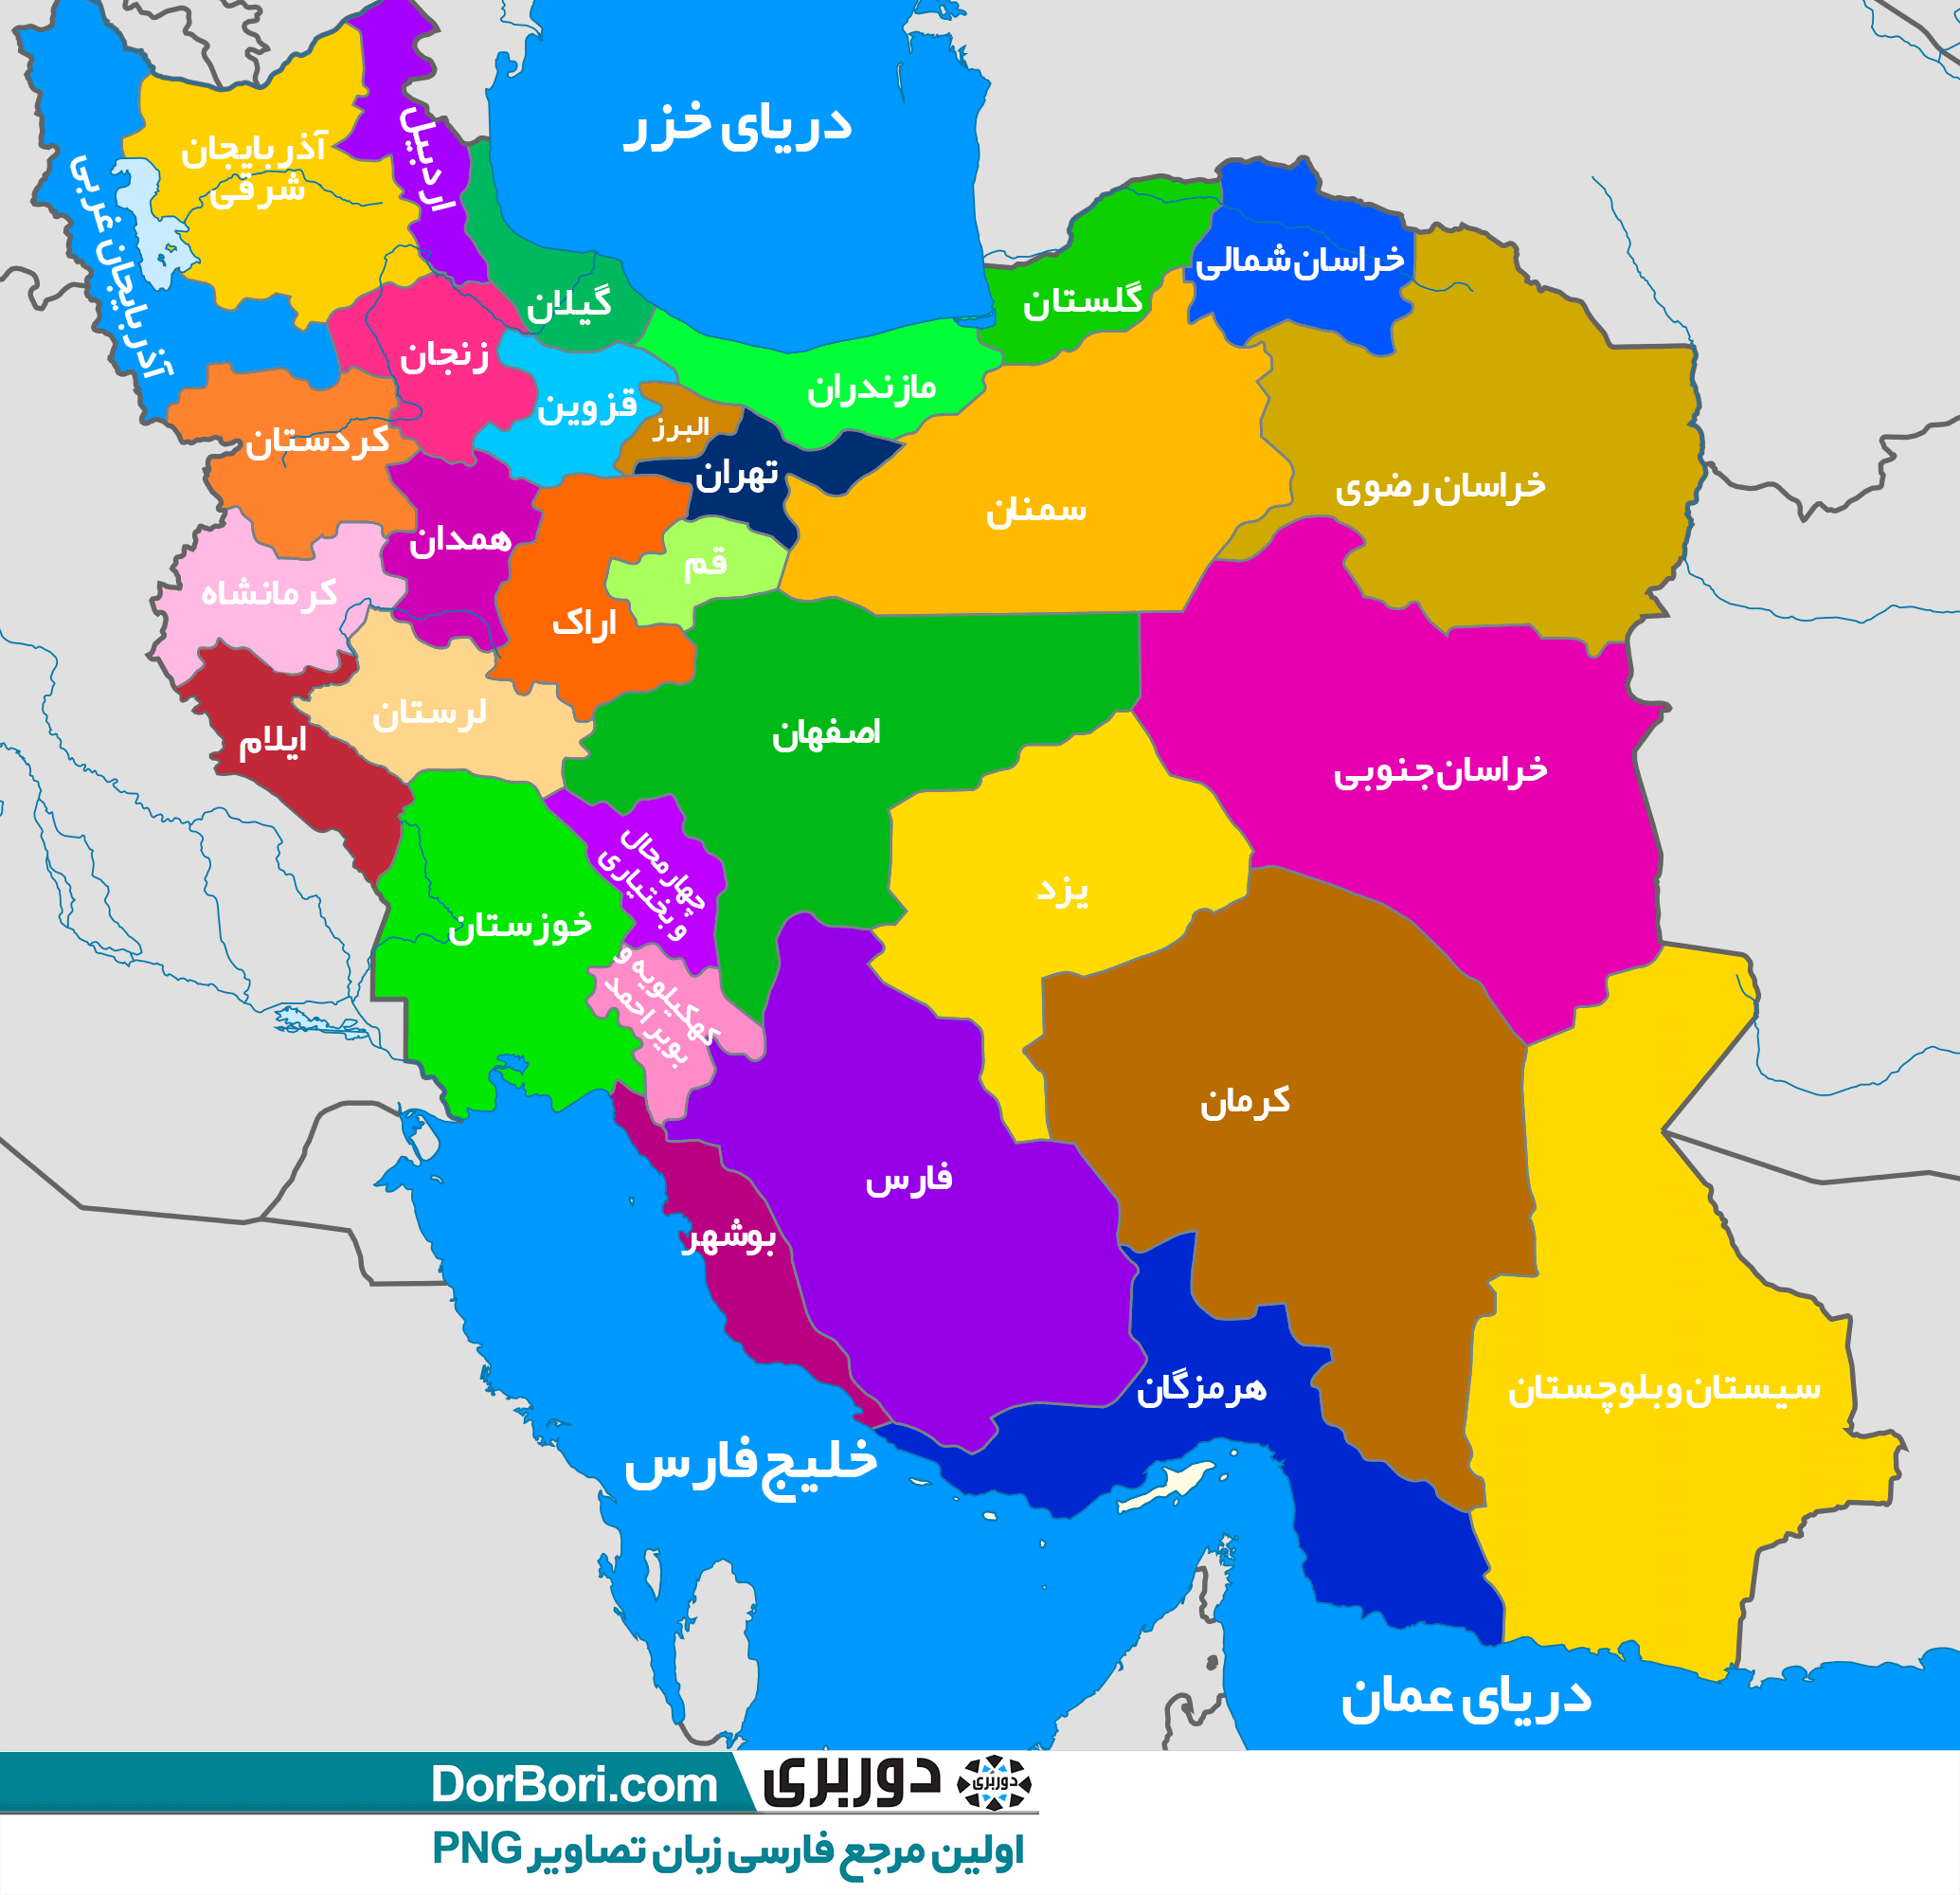 تصویر نقشه ی ایران با استان ها
